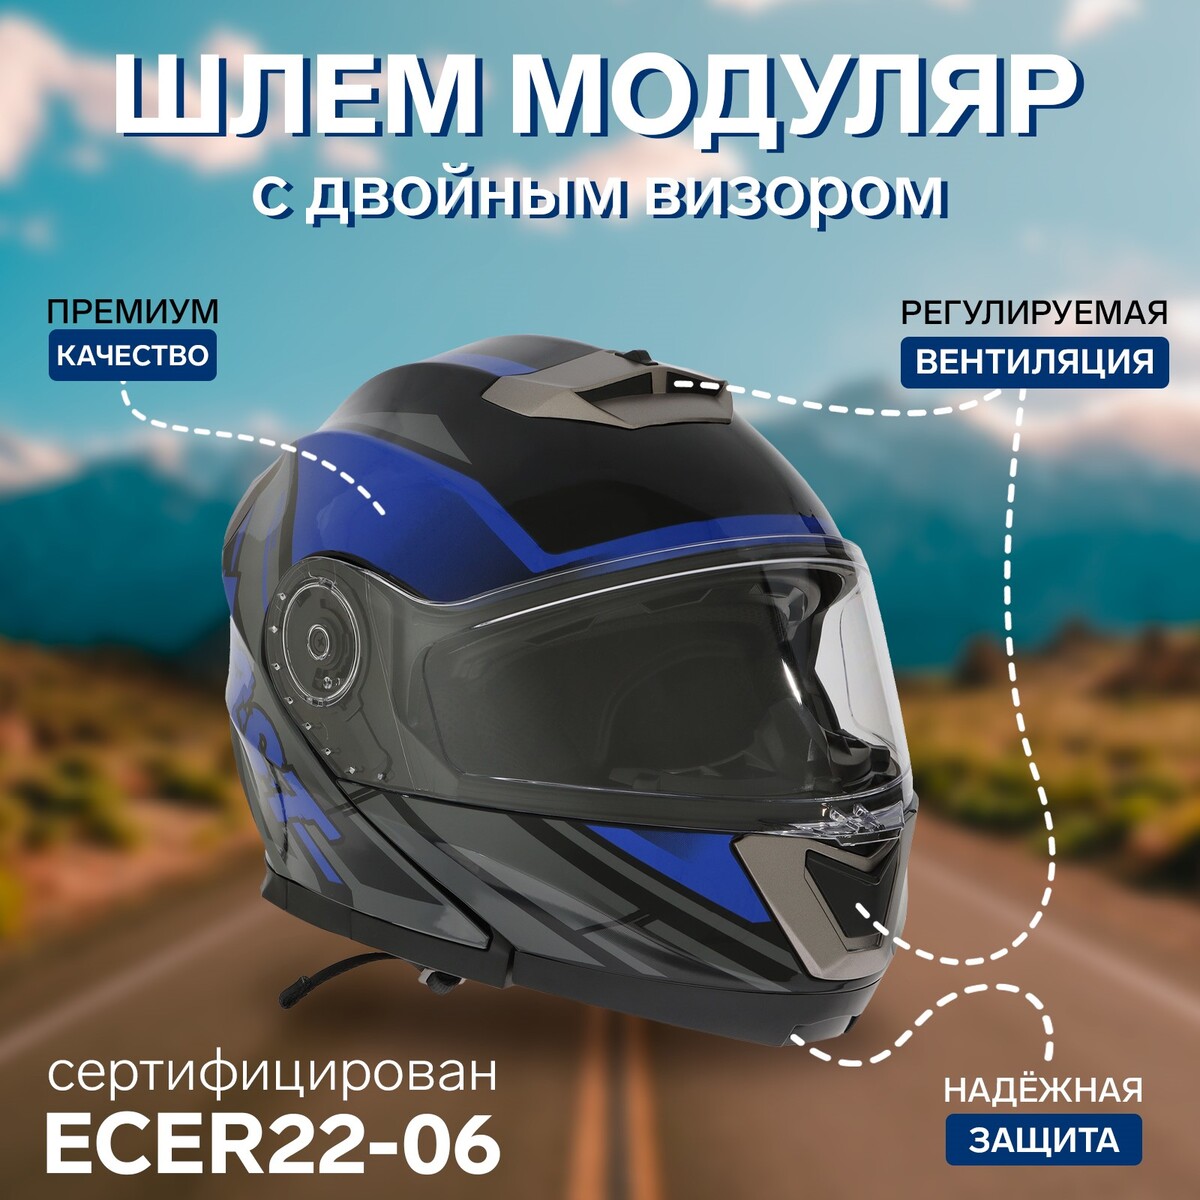 Шлем модуляр с двумя визорами, размер xl (60-61), модель - bld-160e, черно-синий